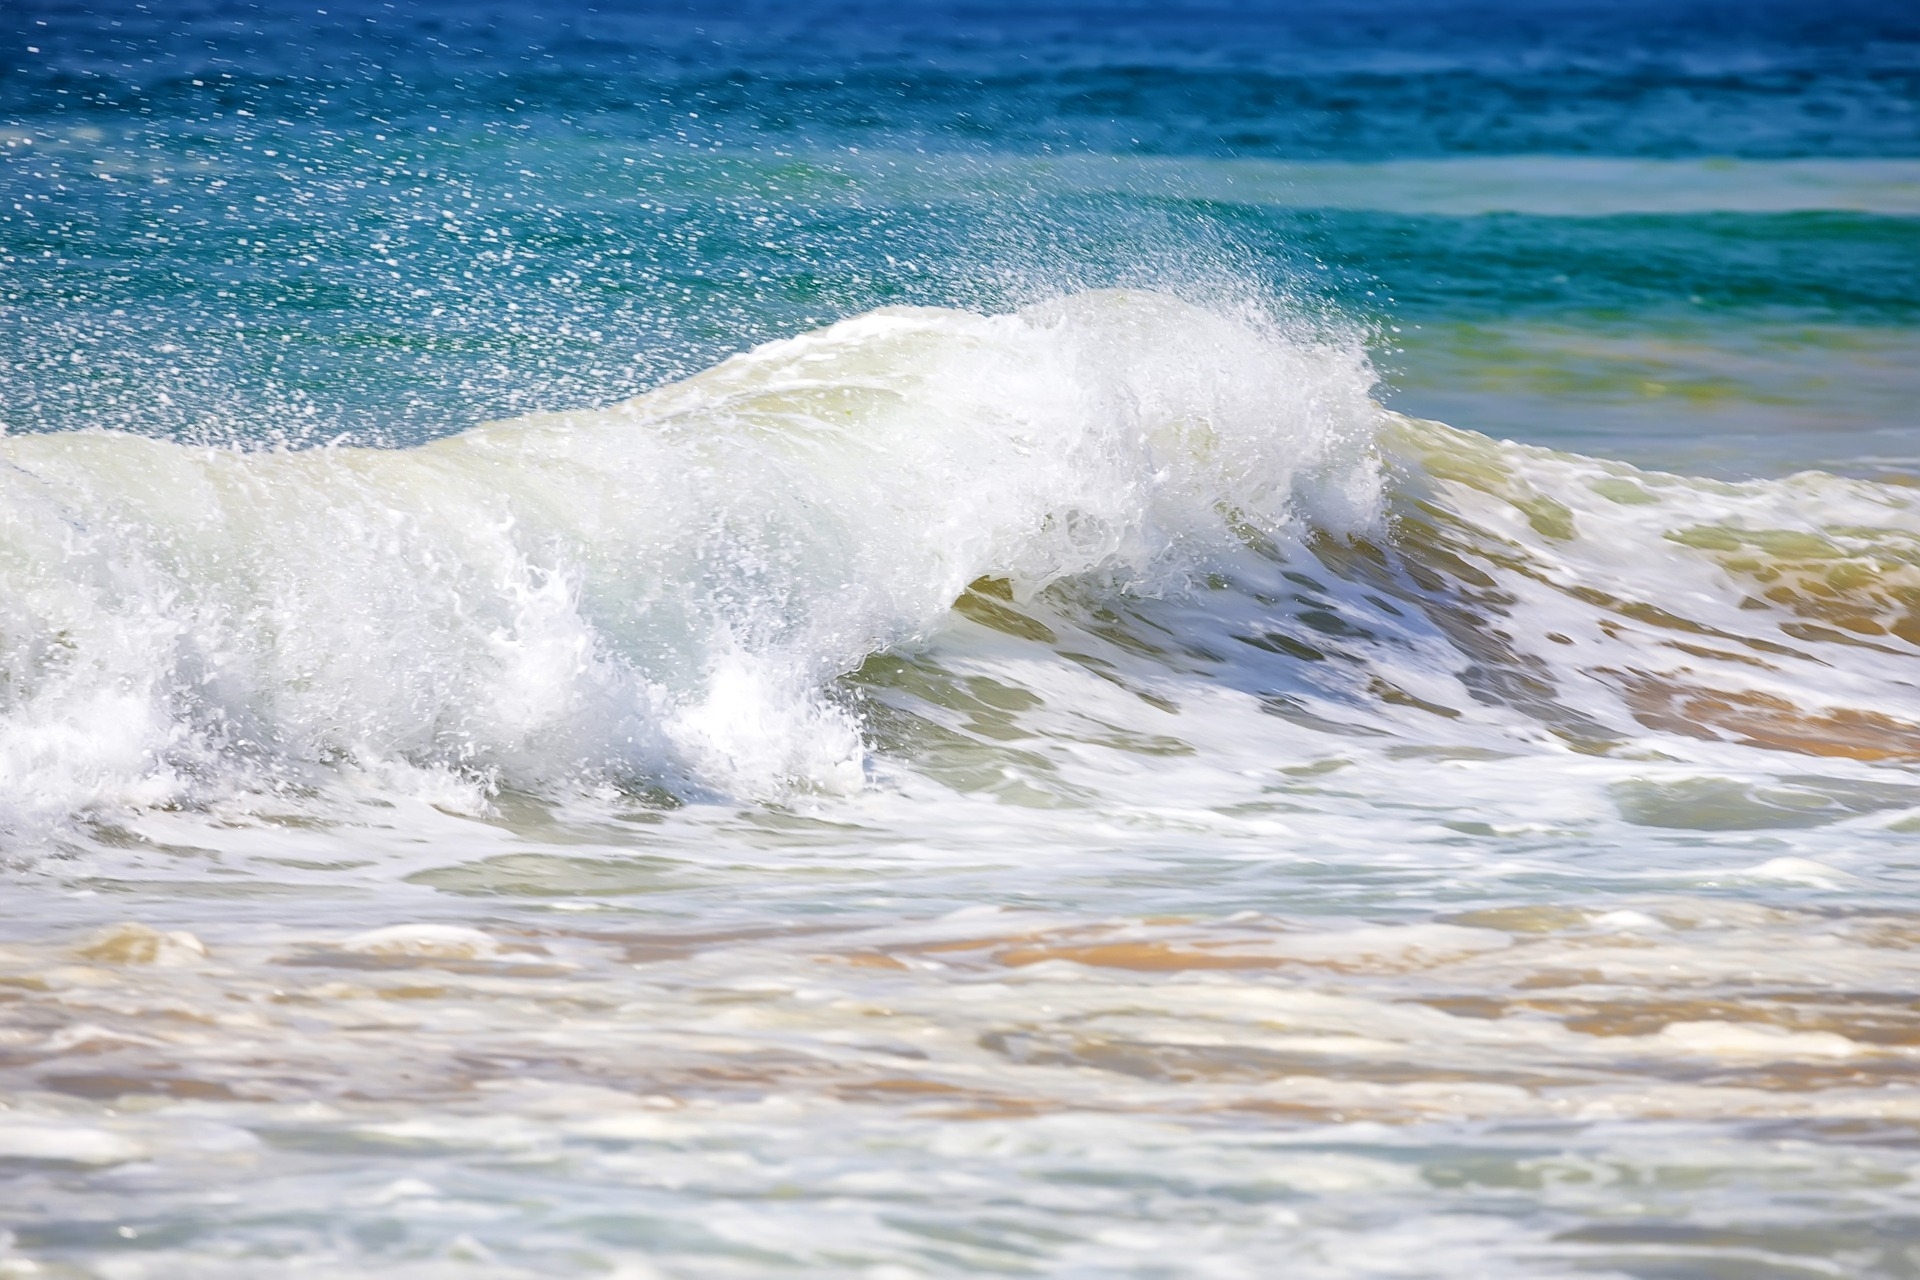 Blue Bond: vågorna som bryter på stränderna symboliserar havets vitalitet